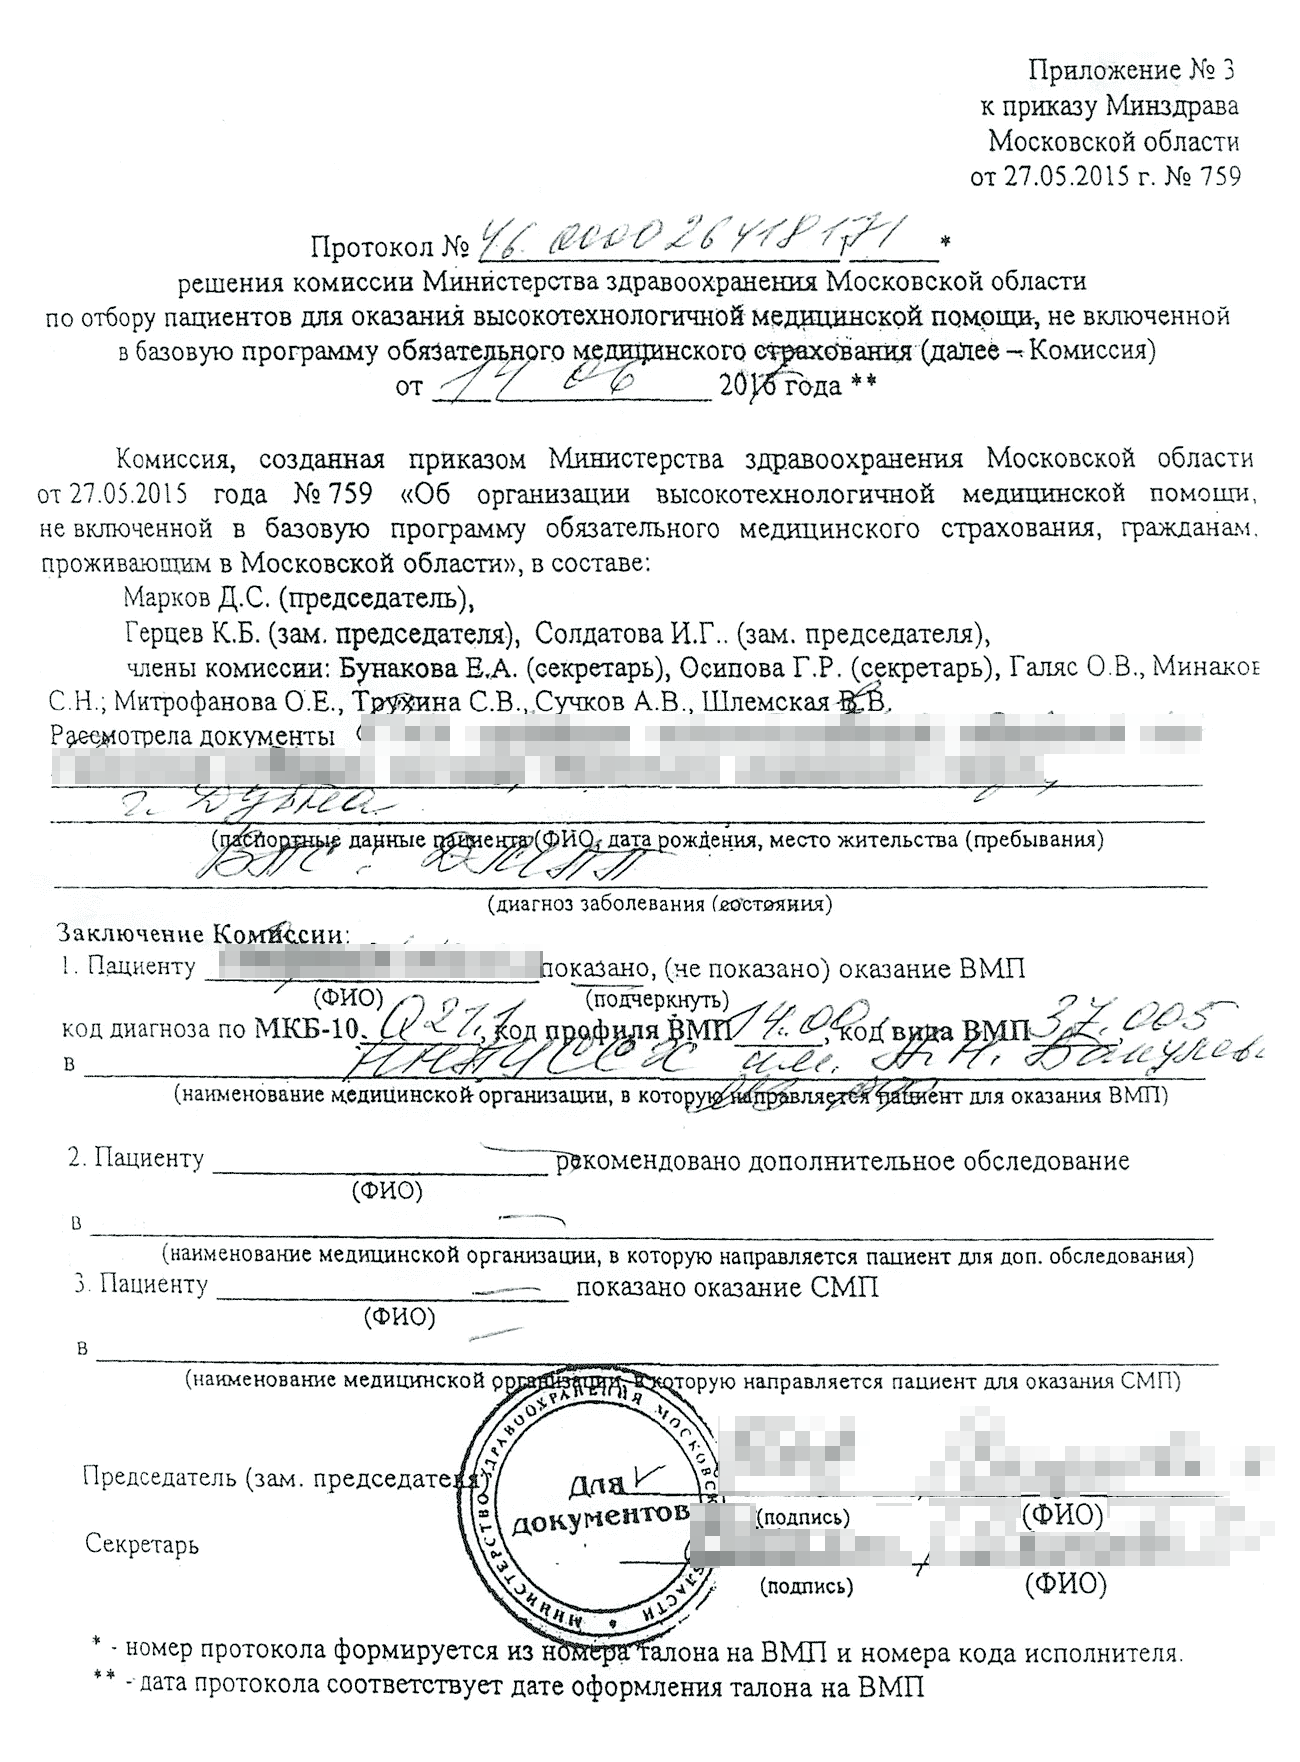 Самого документа у меня не осталось, но он выглядел примерно так. Источник: okolitsa⁠-⁠info.ru